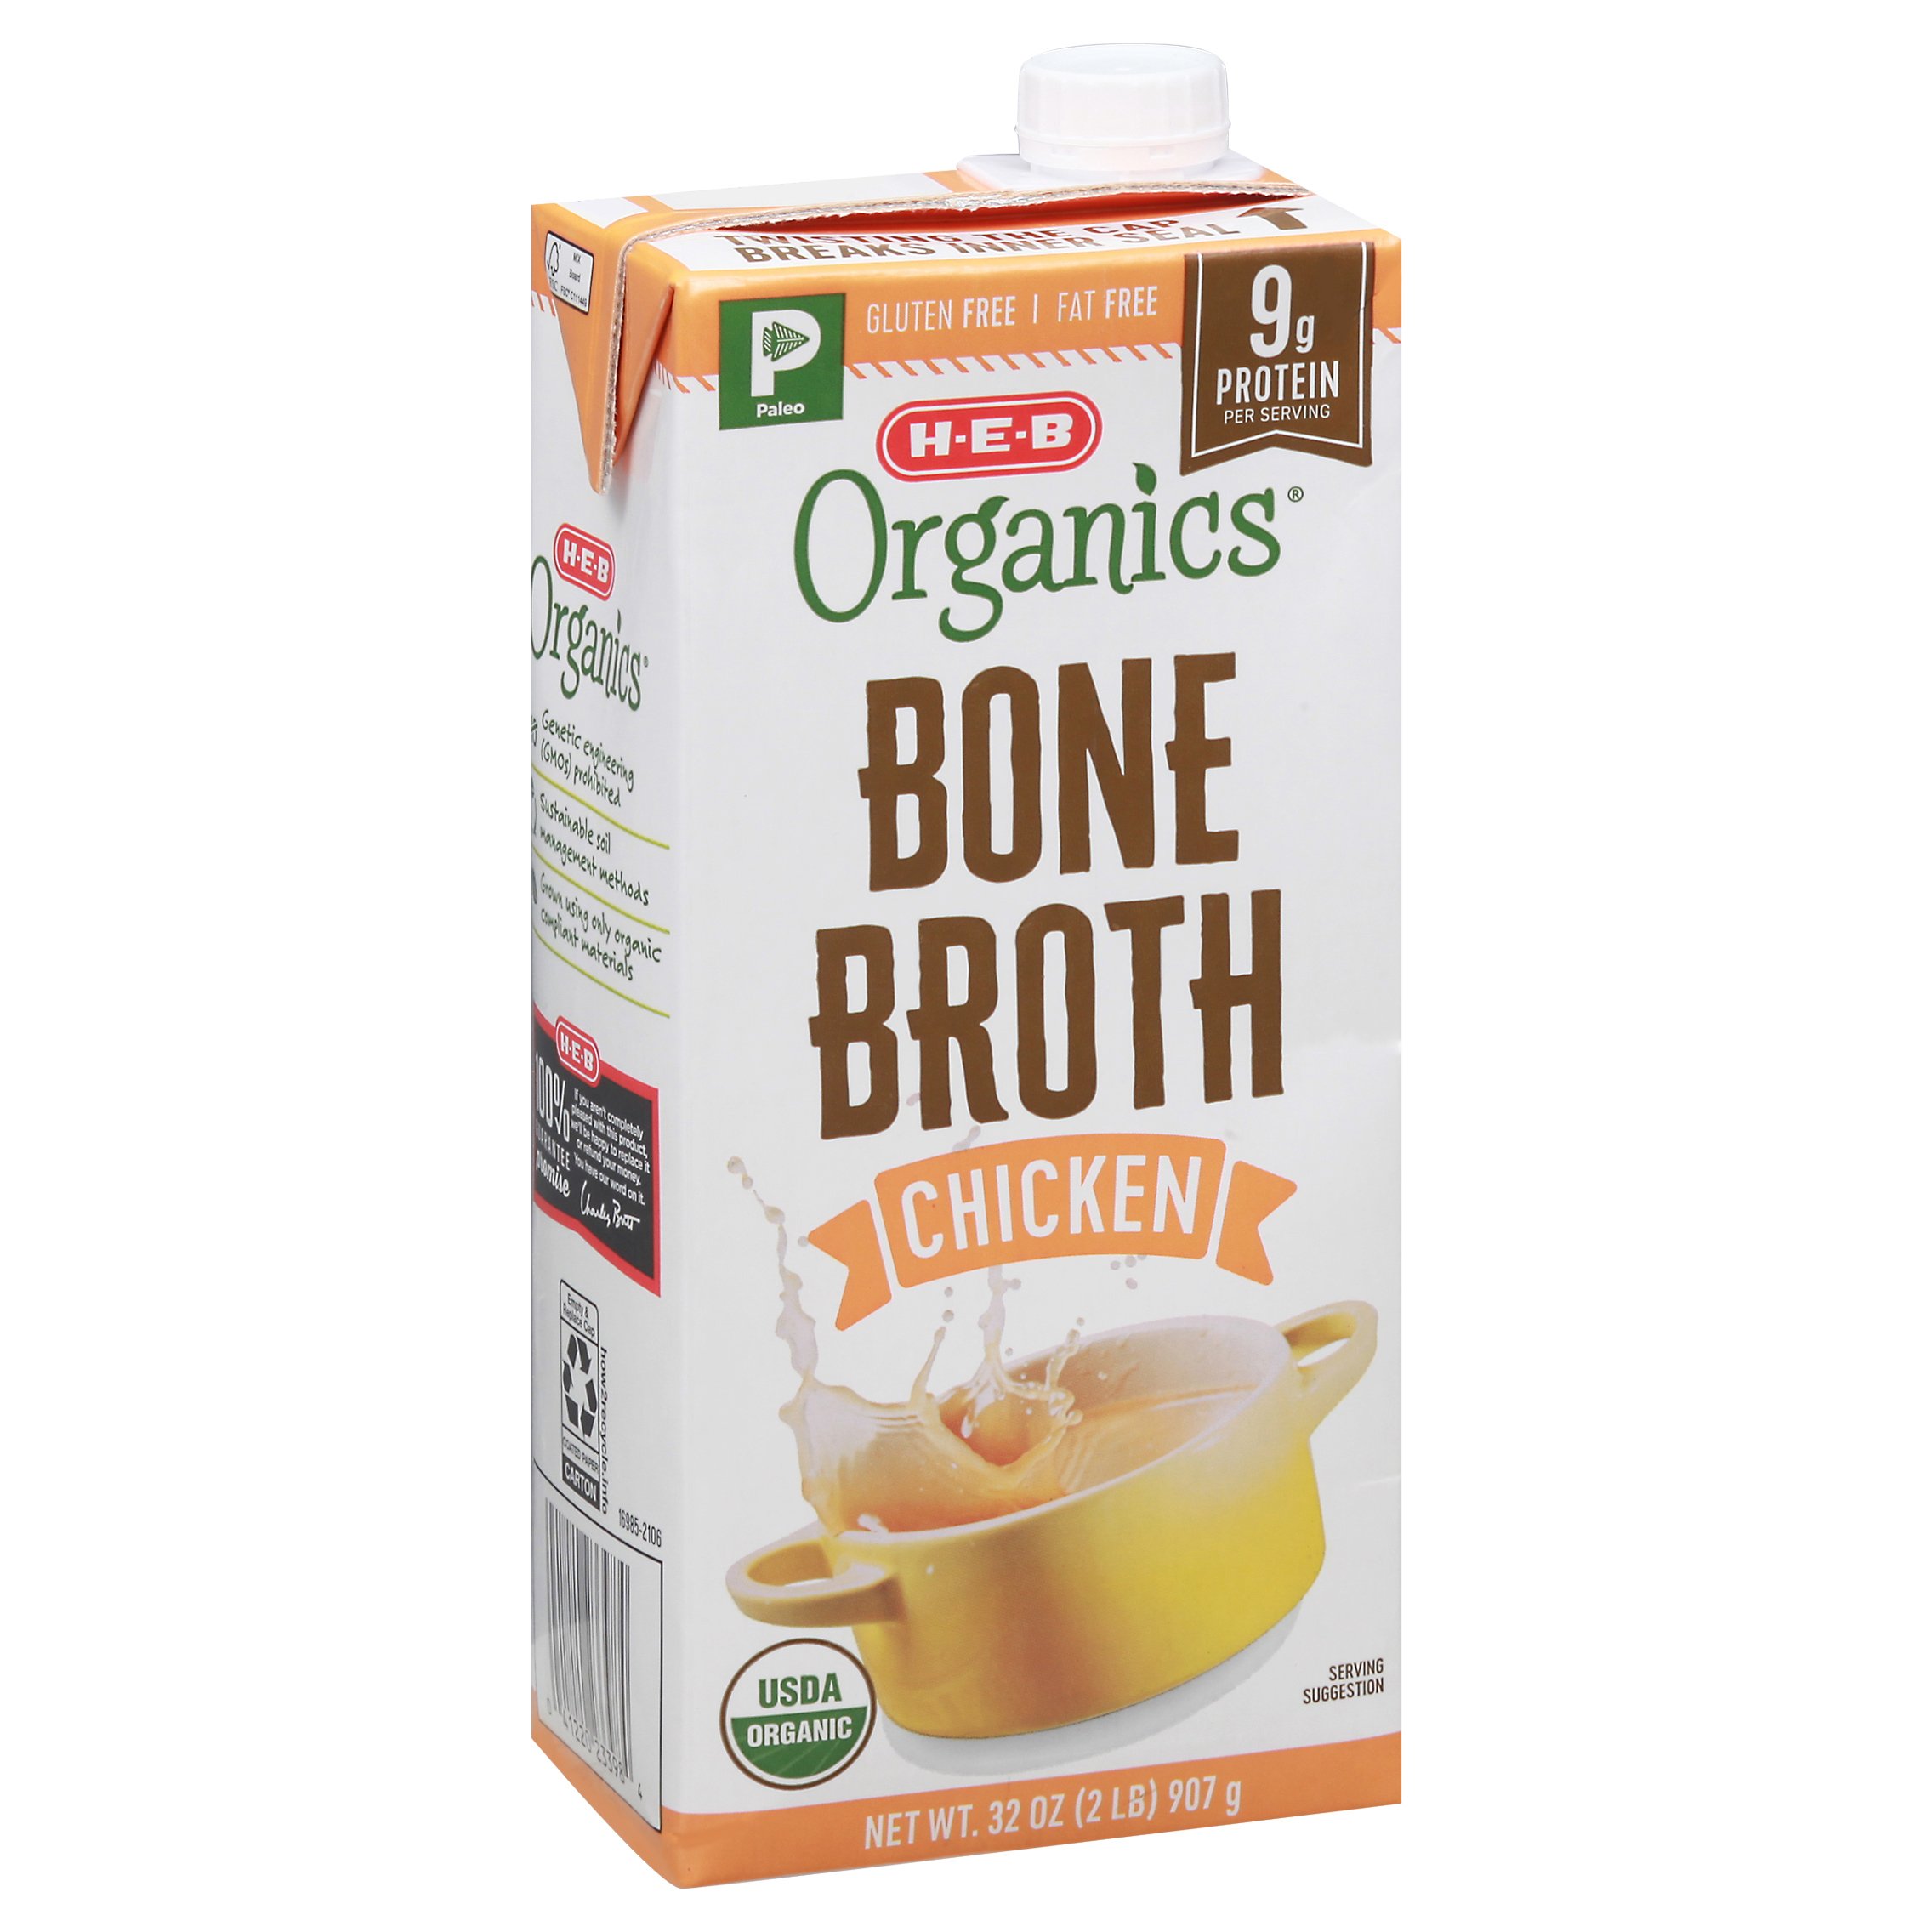 H-E-B Organics Chicken Bone Broth - Shop Broth & Bouillon at H-E-B